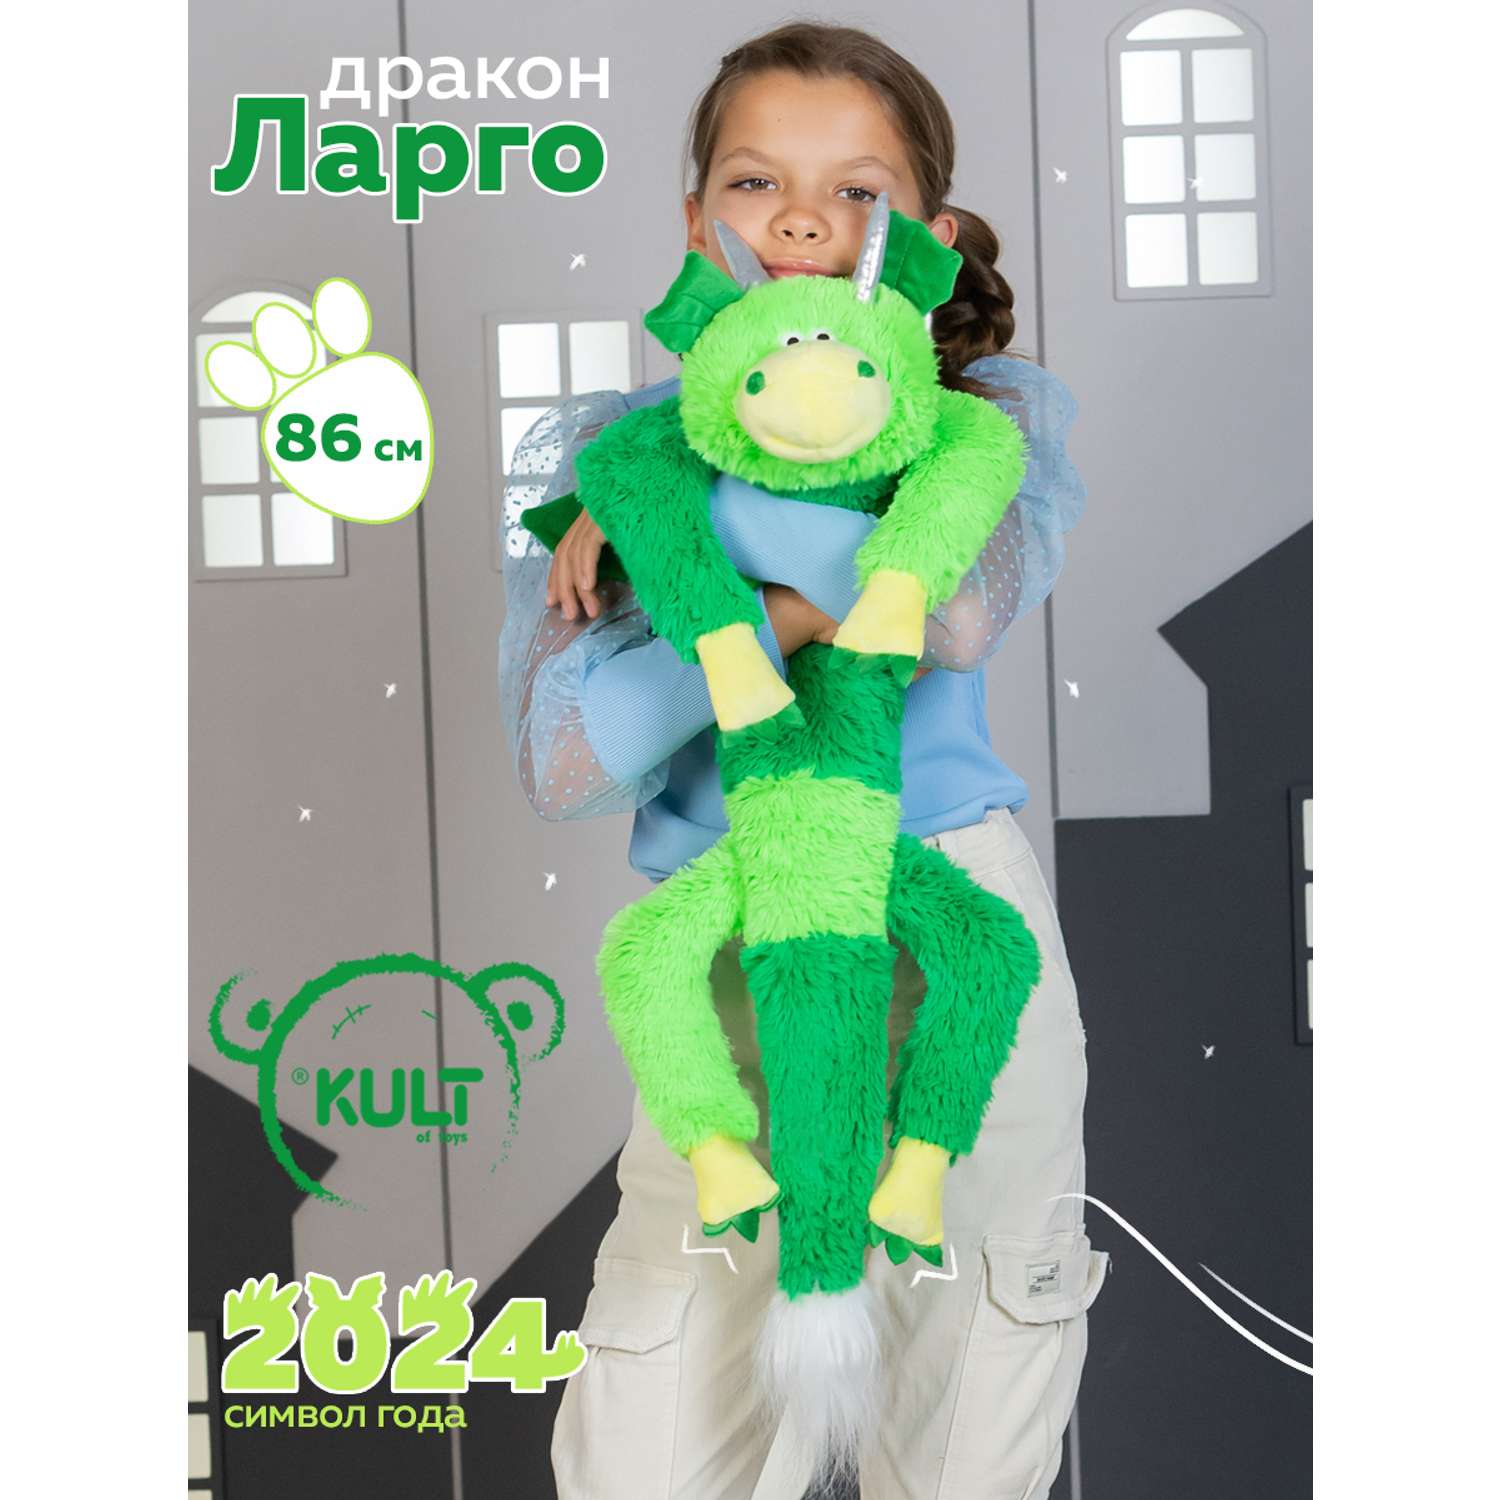 Мягкая игрушка KULT of toys Символ года Дракон Ларго зеленый 86 см - фото 1